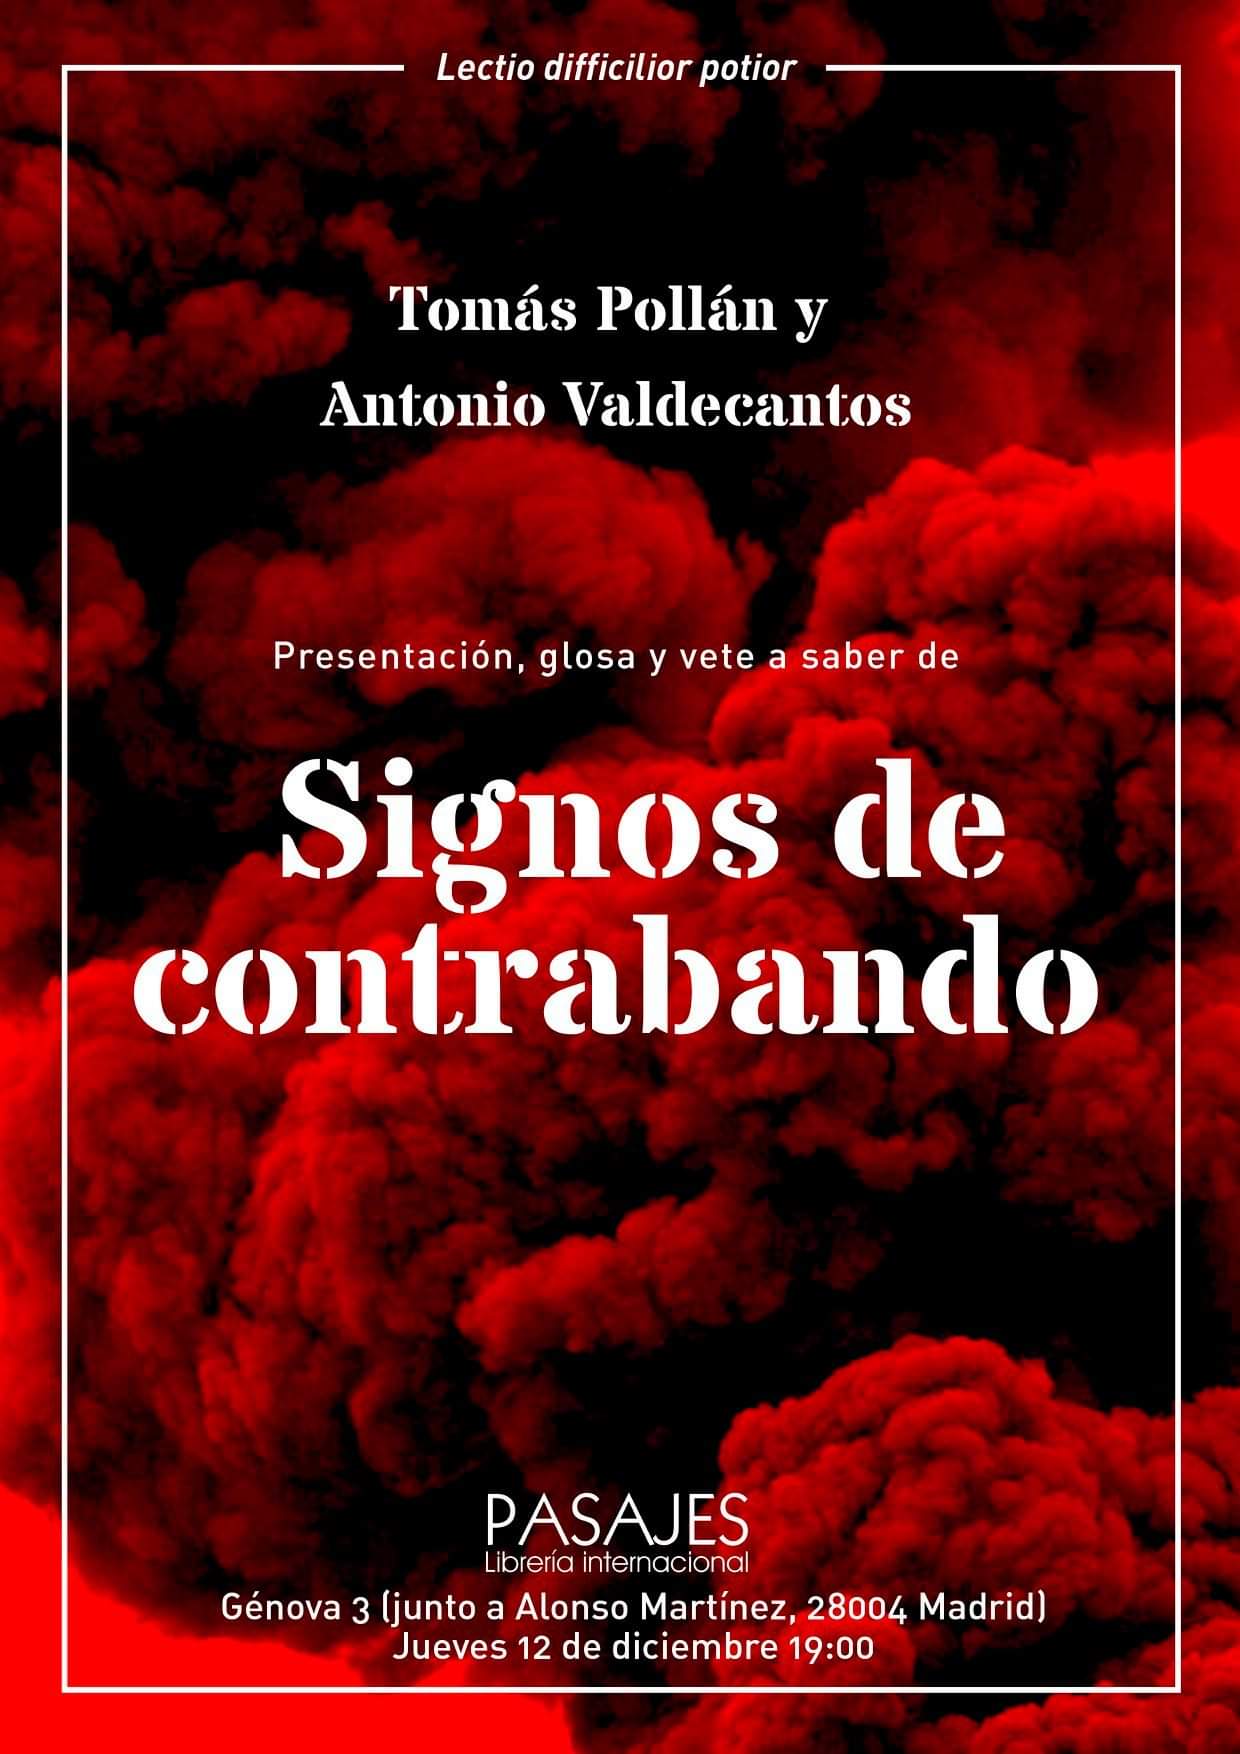 PRESENTACIÓN - Antonio Valdecantos, "Signos de contrabando. Informe contra la idea de comunicación", Underwood, 2019